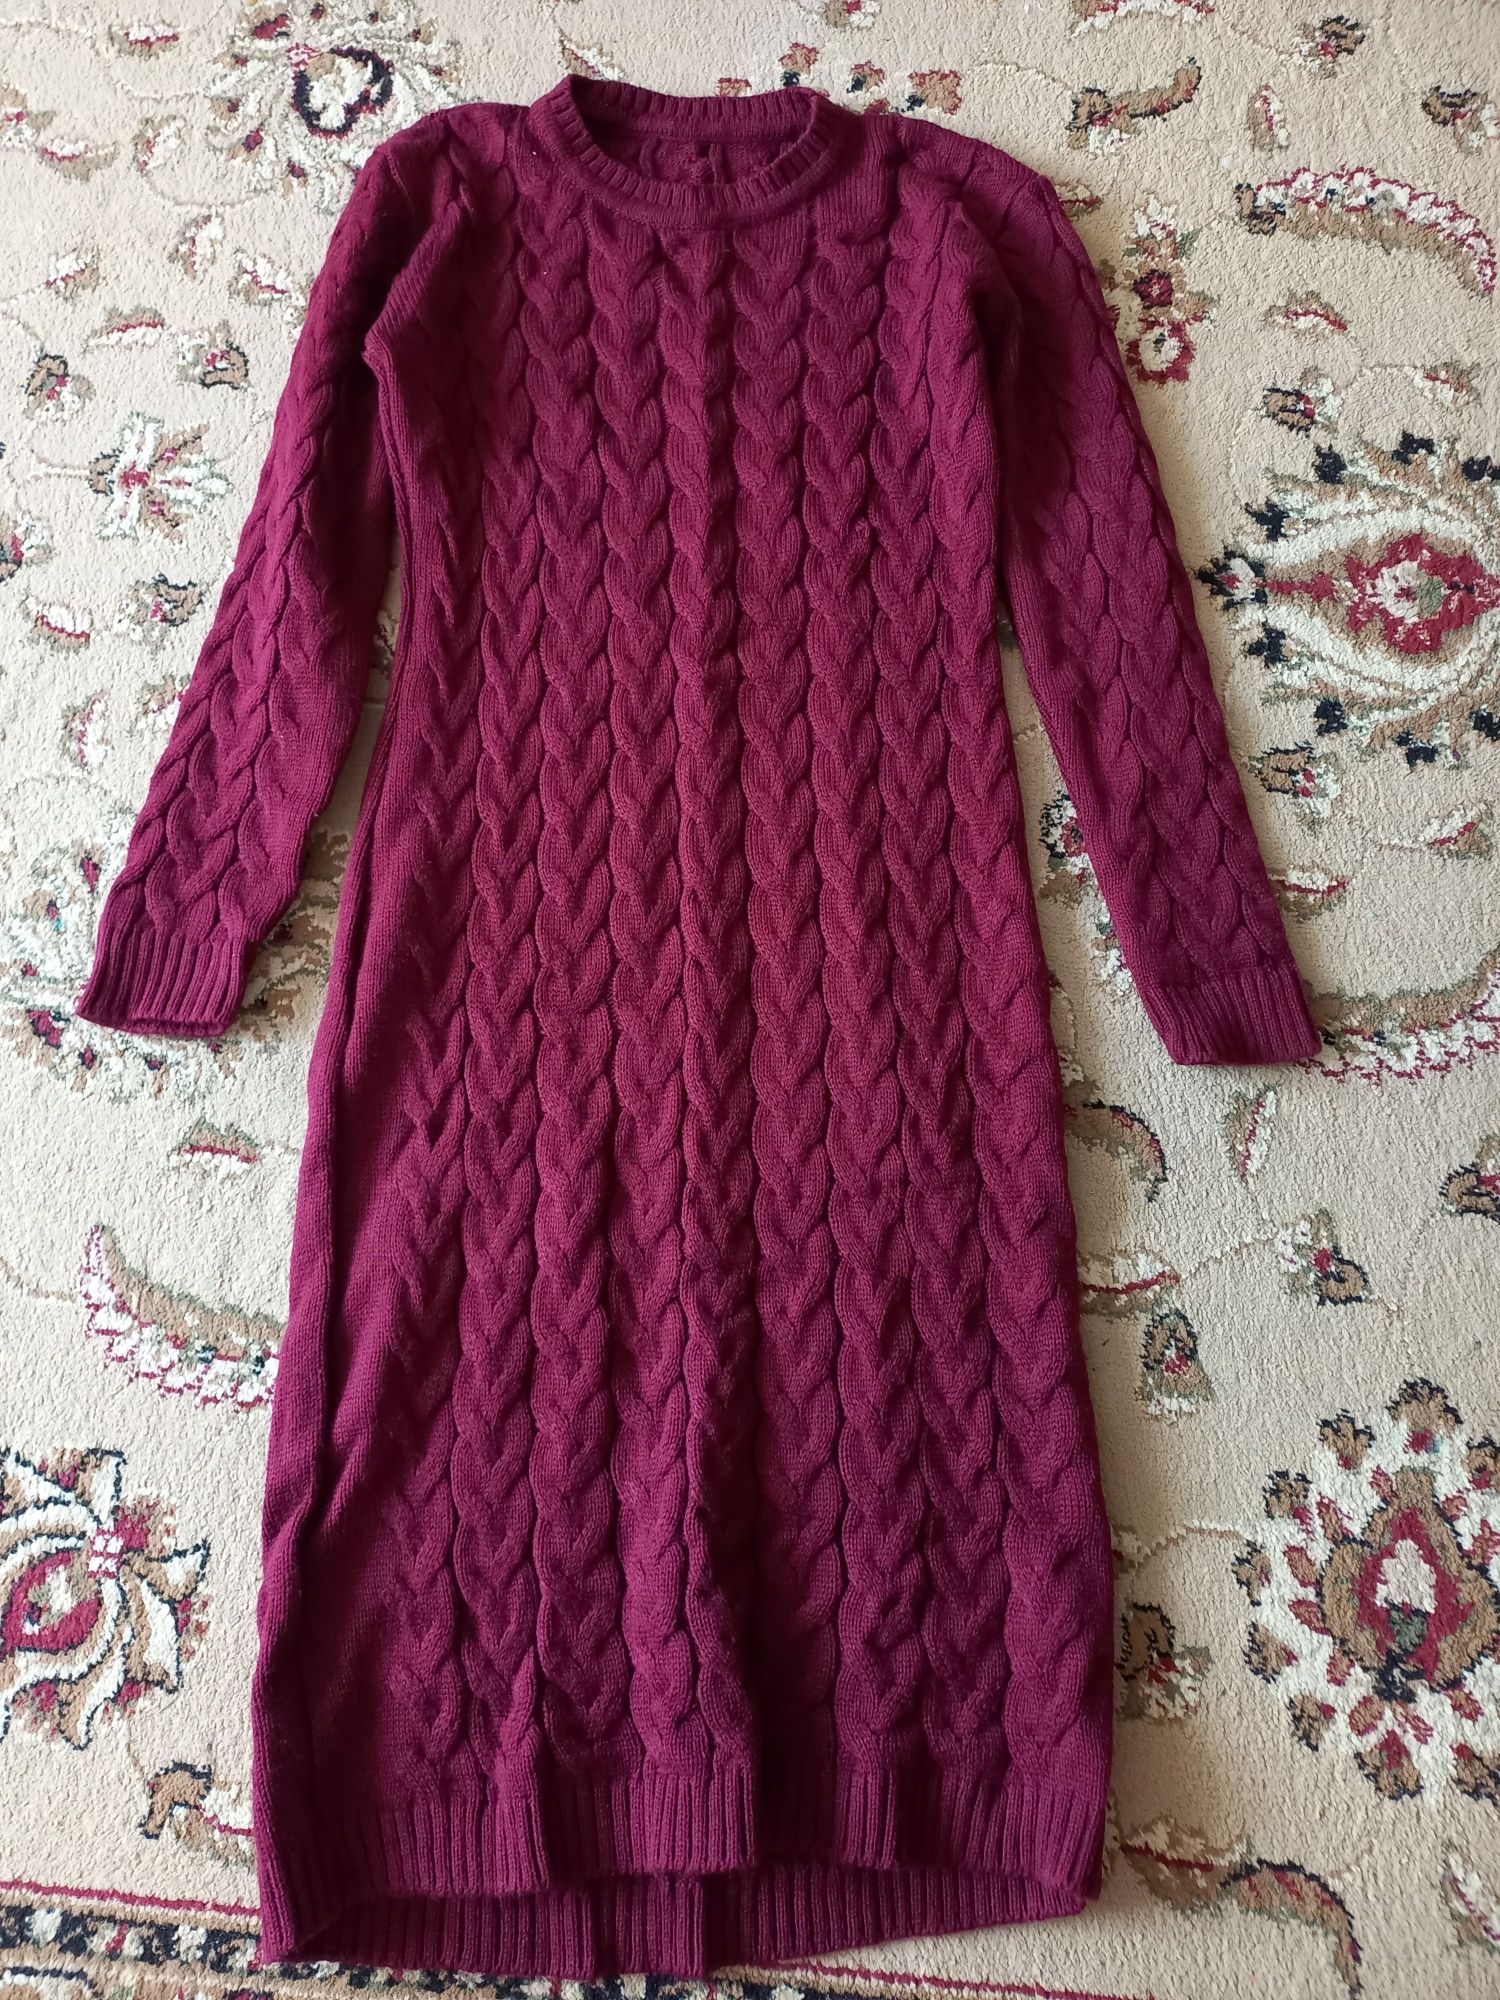 Платье вязаное.Цена 10000 тенге